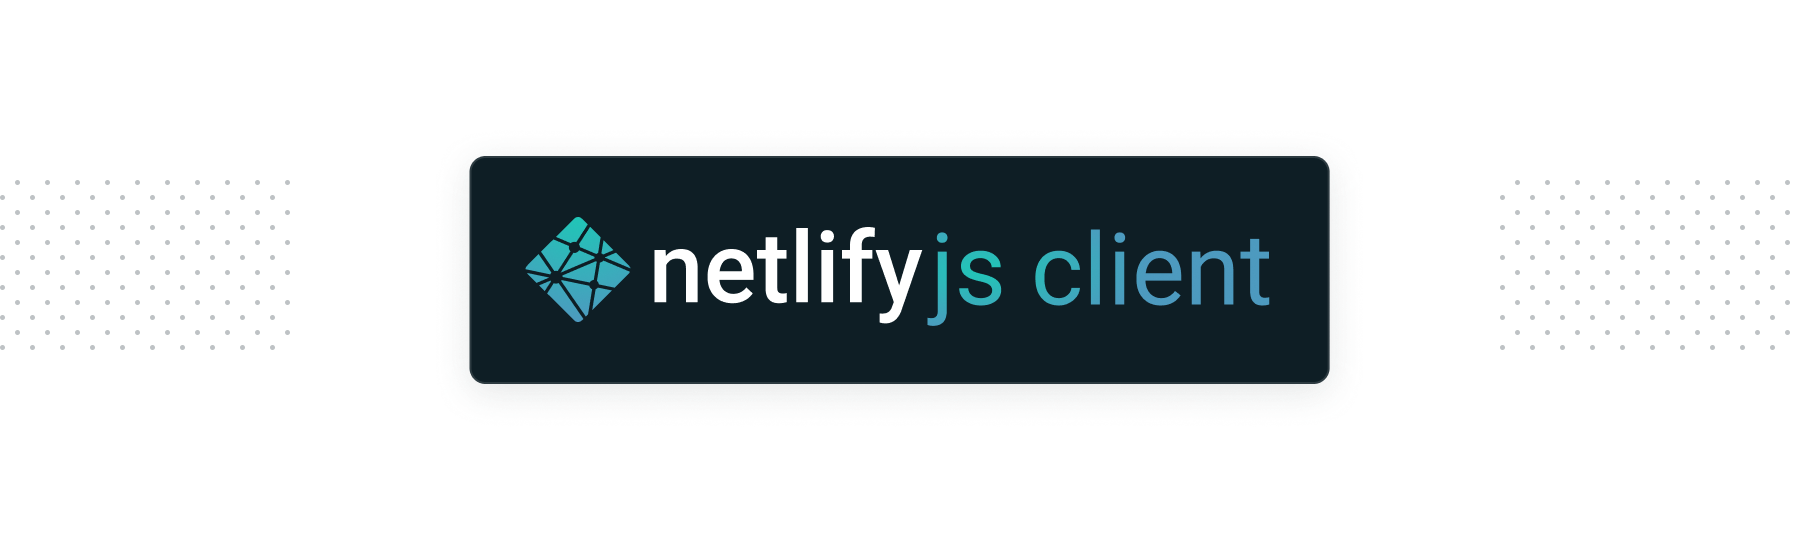 netlify/js-client